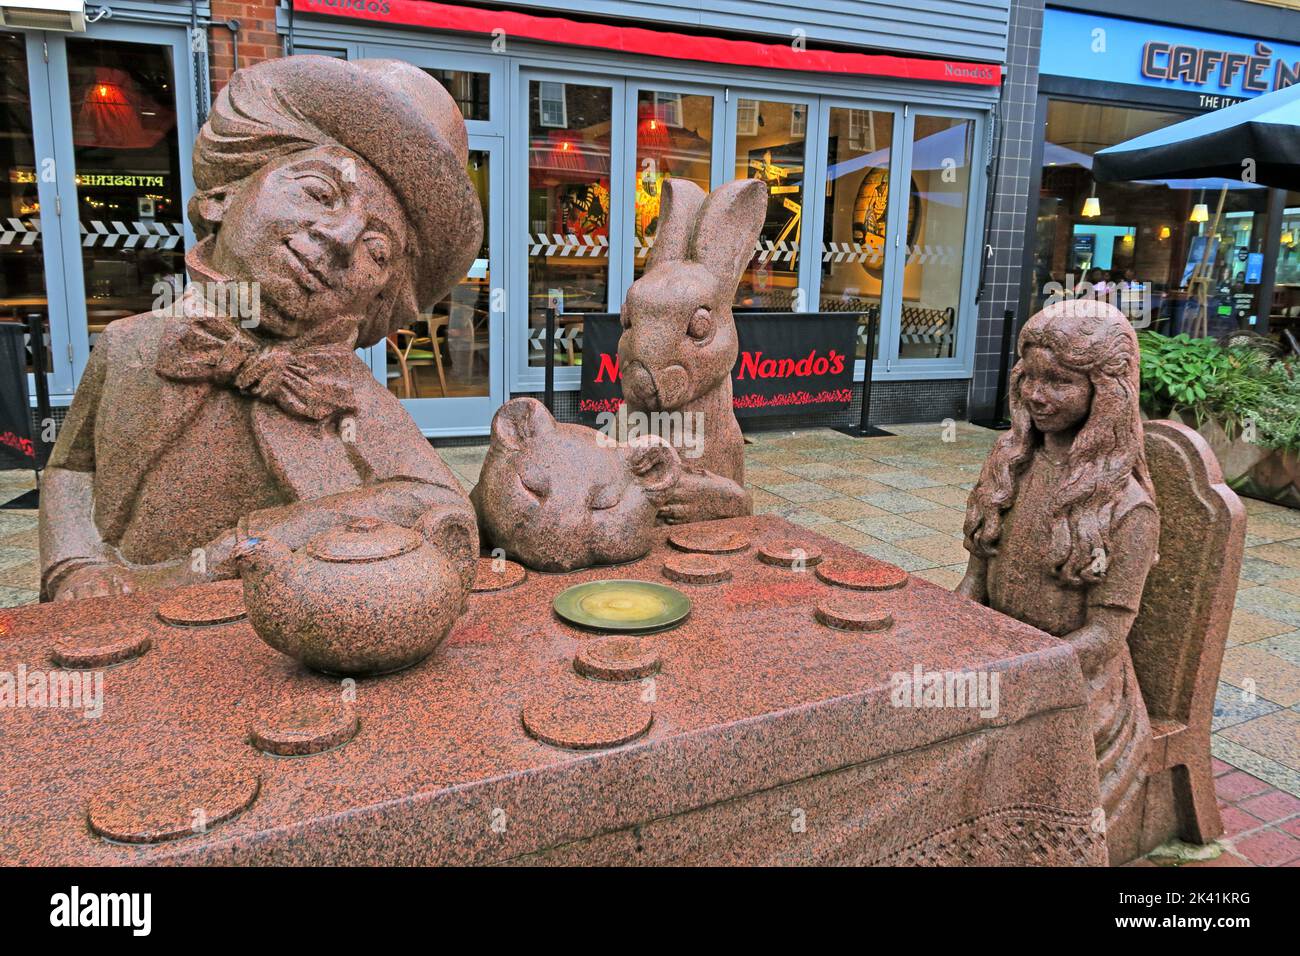 Statue de la fête du thé Mad Hatters, Alice au pays des merveilles, scène, Golden Square Warrington, Cheshire, Angleterre, Royaume-Uni, WA1 1QB, par Edwin Russell Banque D'Images